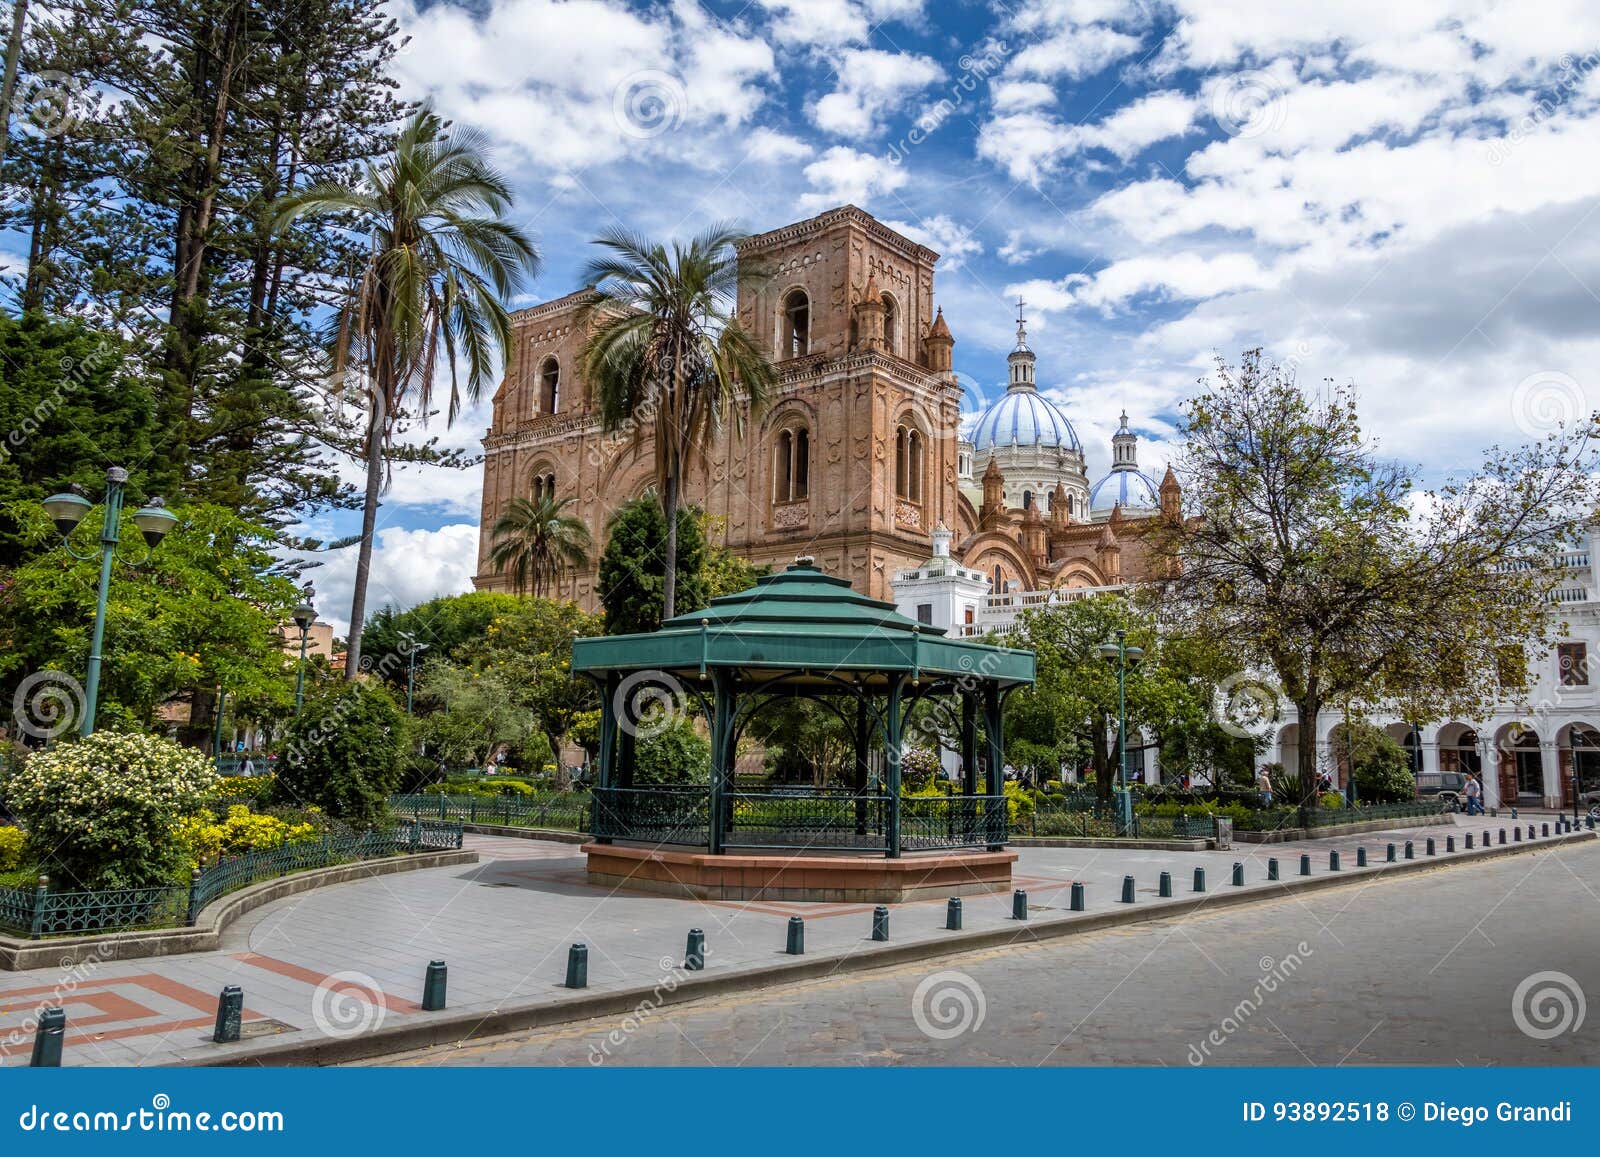 park calderon and inmaculada concepcion cathedral - cuenca, ecuador